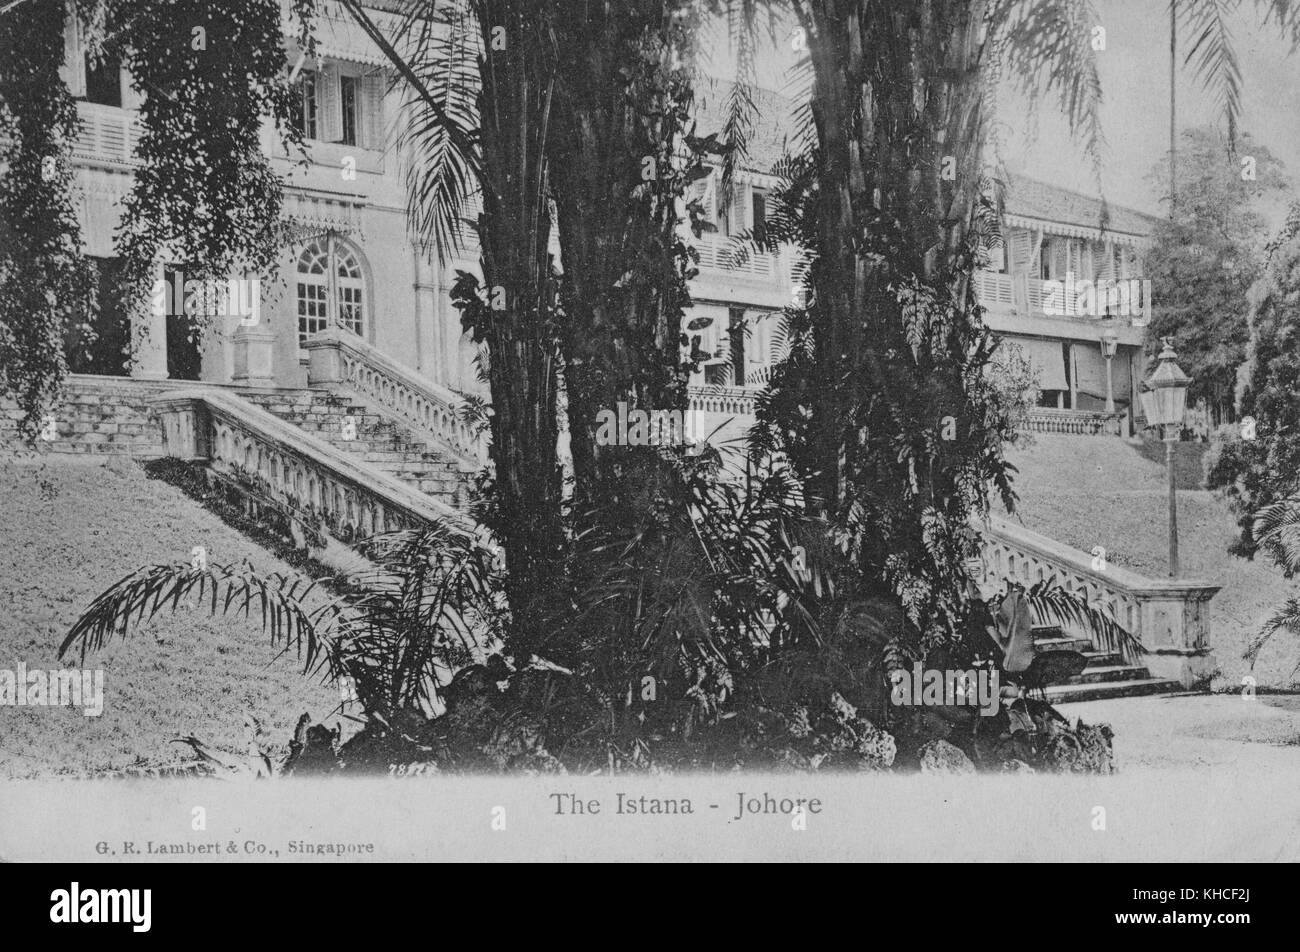 Cartolina che mostra la parte anteriore di un grande edificio, con palme e altra vegetazione, intitolato Istana - Johore, palazzo reale del Sultano di Johor che si trova a Johor Bahru, Malesia, 1904. Dalla Biblioteca pubblica di New York. Foto Stock